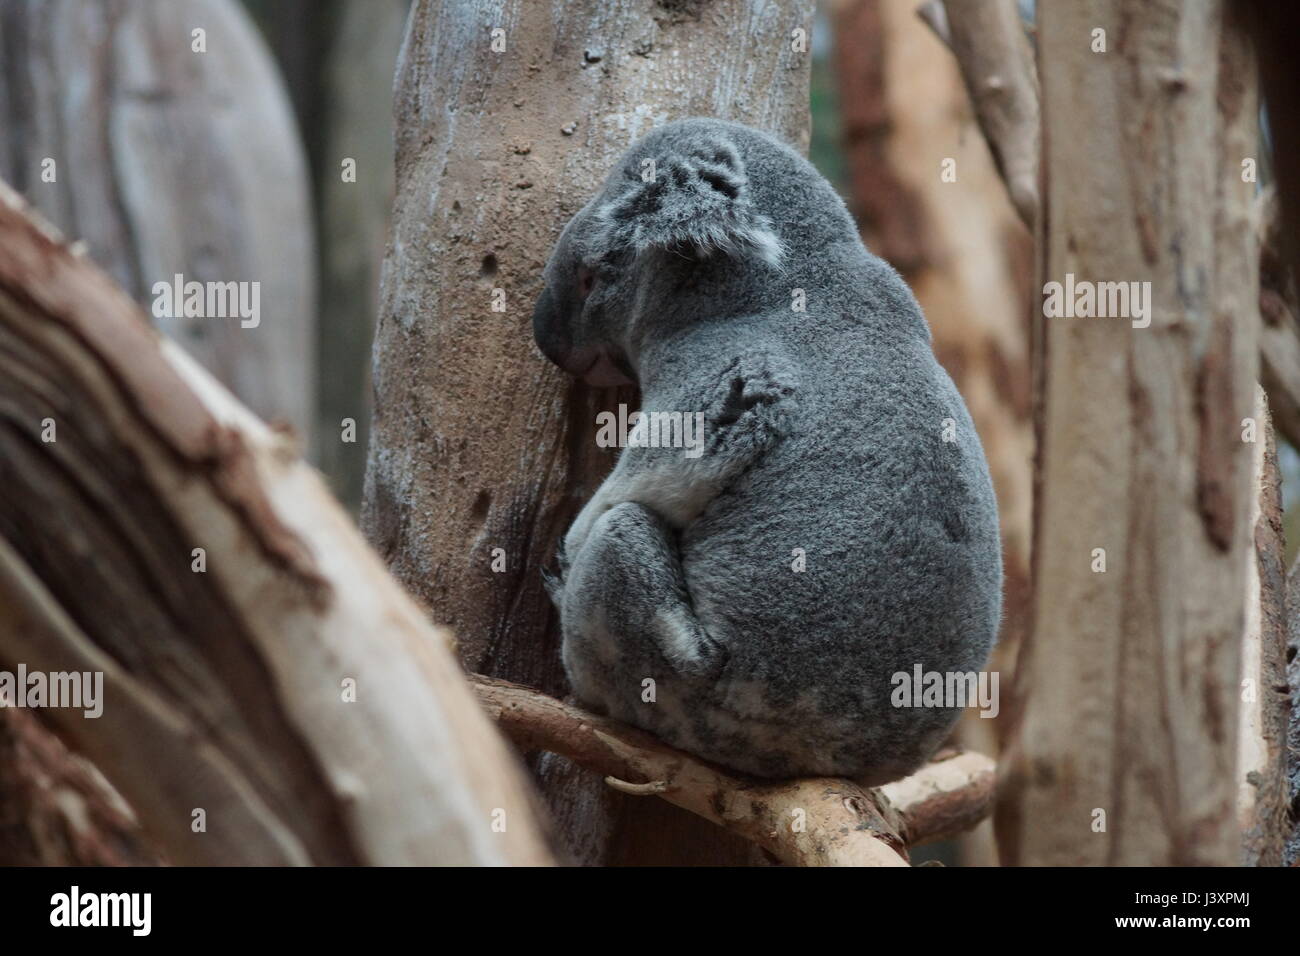 Sleeping coala Stock Photo